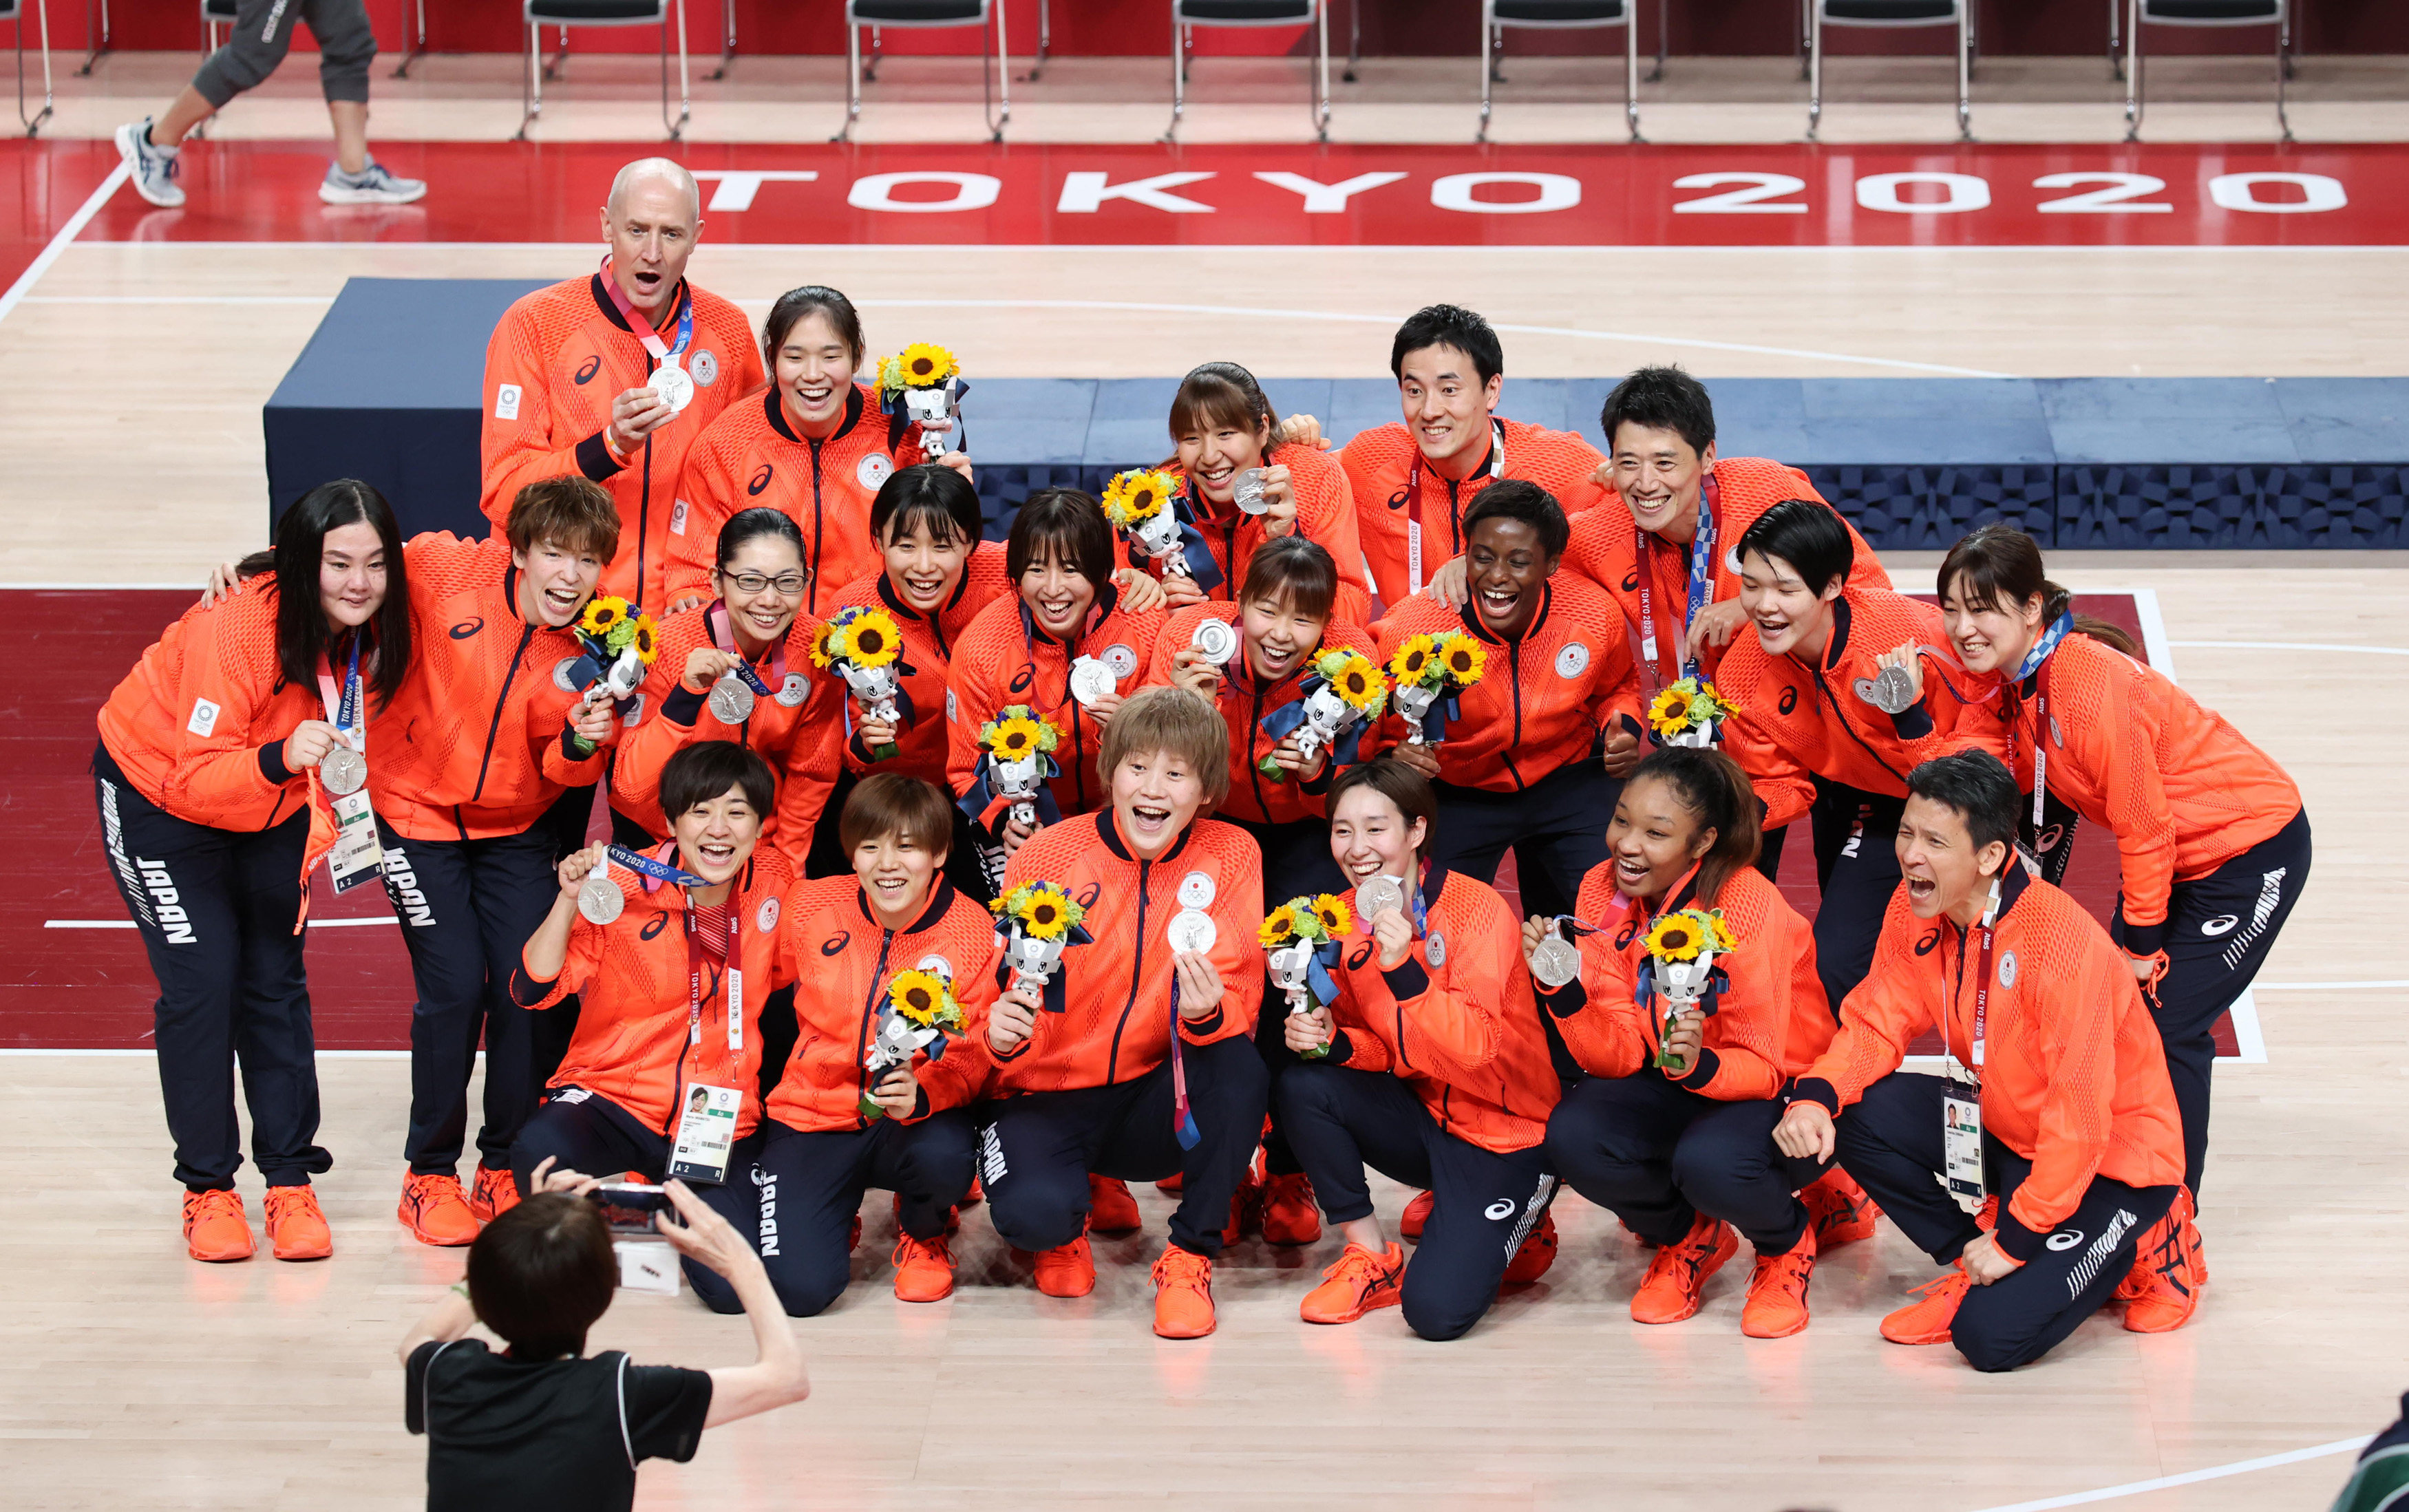 指揮官と選手を結んだ強い絆 猛練習で五輪 銀 つかんだバスケ女子日本代表 1 4ページ 産経ニュース